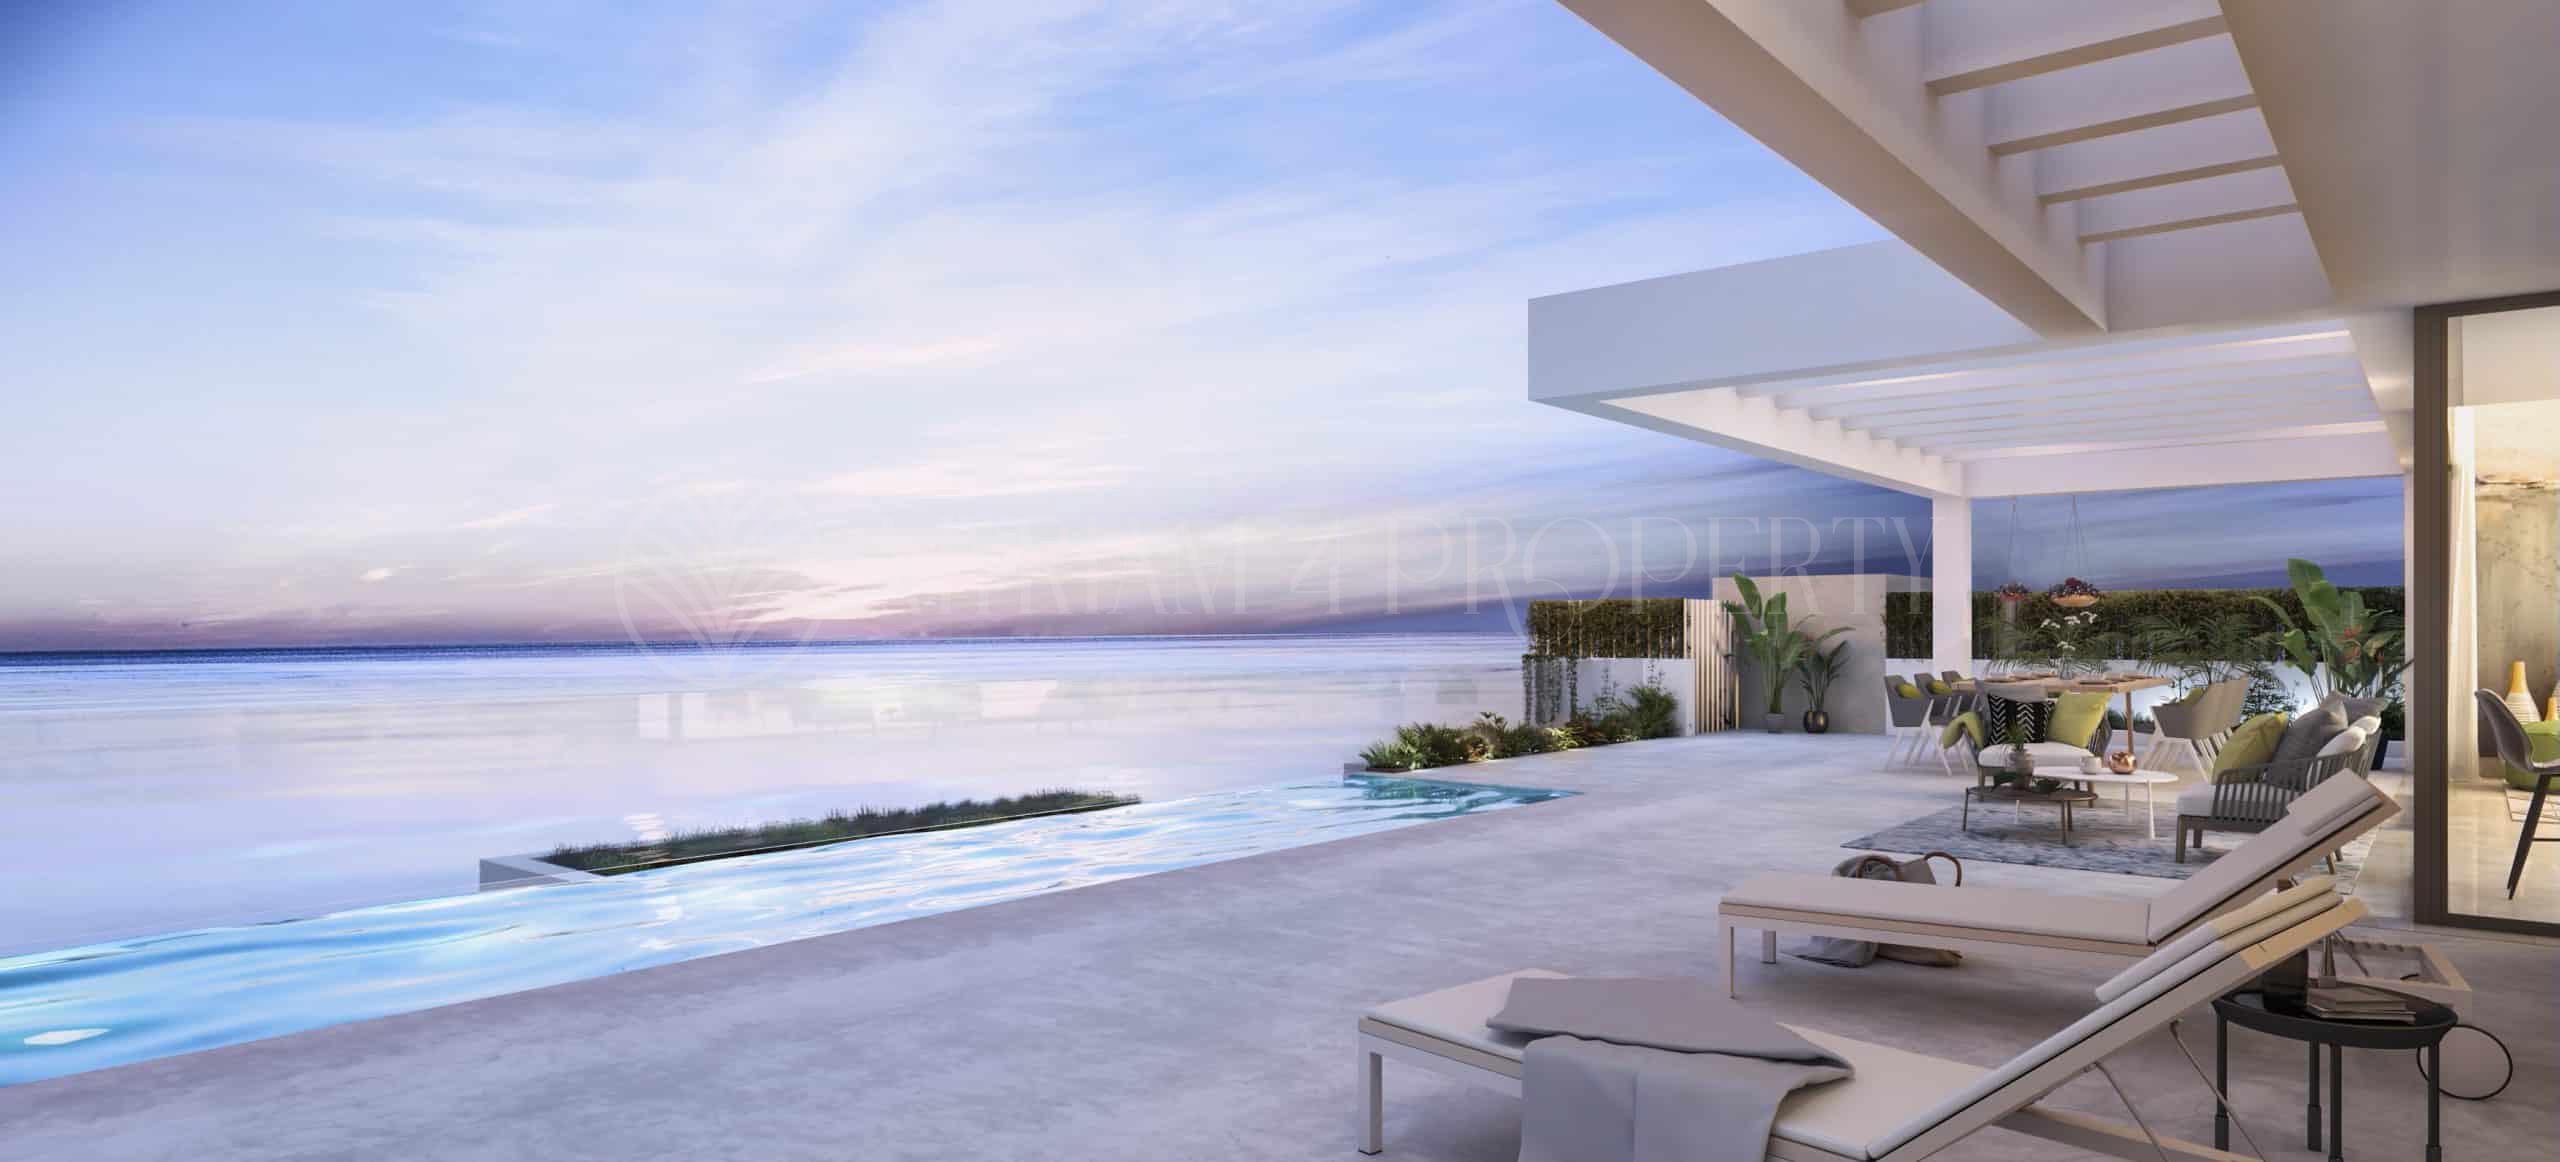 Luxe villas met panoramisch zeezicht in Costa Tropical